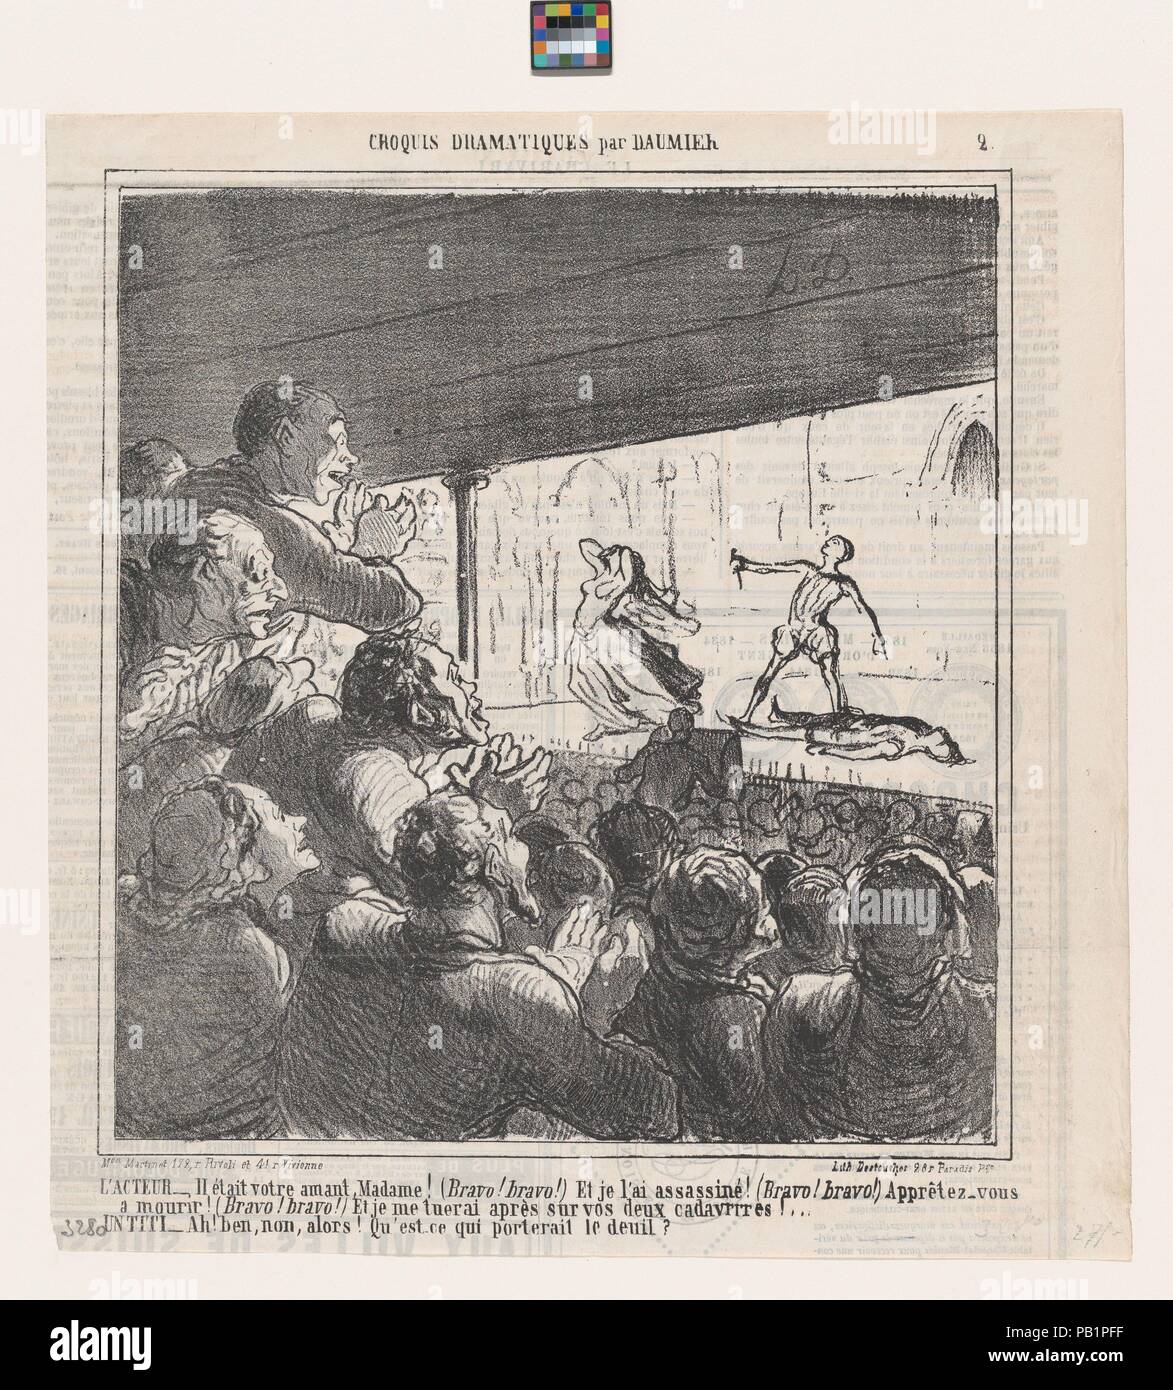 Der Schauspieler und eine street Urchin, aus 'dramatische Skizzen", in Le Charivari, 18. April 1864 veröffentlicht. Artist: Honoré Daumier (Französisch, Marseille 1808-1879 Valmondois). Abmessungen: Bild: 9 9/16 x 8 13/16-in. (24,3 × 22,4 cm) Blatt: 11 7/16 × 10 13/16-in. (29,1 × 27,5 cm). Drucker: destouches (Paris). Herausgeber: Aaron Martinet (Französisch, 1762-1841). Serie/Portfolio: 'dramatische Skizzen" (Croquis dramatiques). Datum: April 18, 1864. Die Schauspieler: - Er war Ihr geliebter Madame! (Bravo! Bravo!) Und ich ihn getötet! (Bravo! Bravo!). Vorbereiten zu sterben! (Bravo! Bravo!) und ich werde mich auf die zwei Co töten Stockfoto